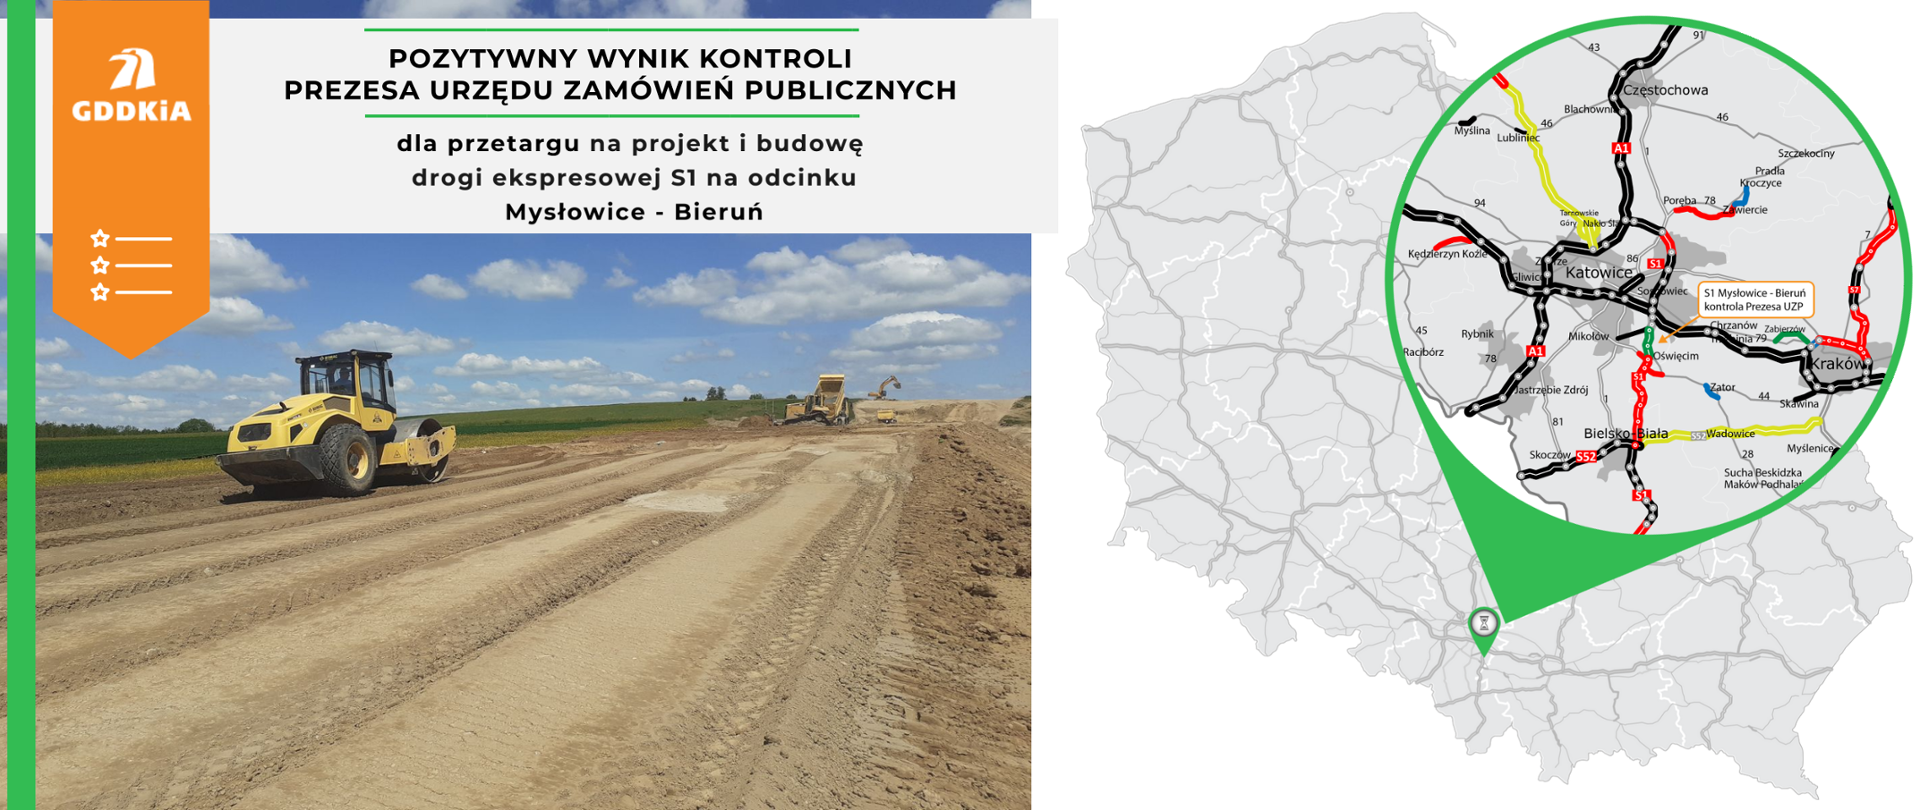 GDDKiA. Ostatni krok do podpisania umowy na realizację S1 Mysłowice - Bieruń. Mapa stanu budowy dróg ze wskazaniem odcinka. 